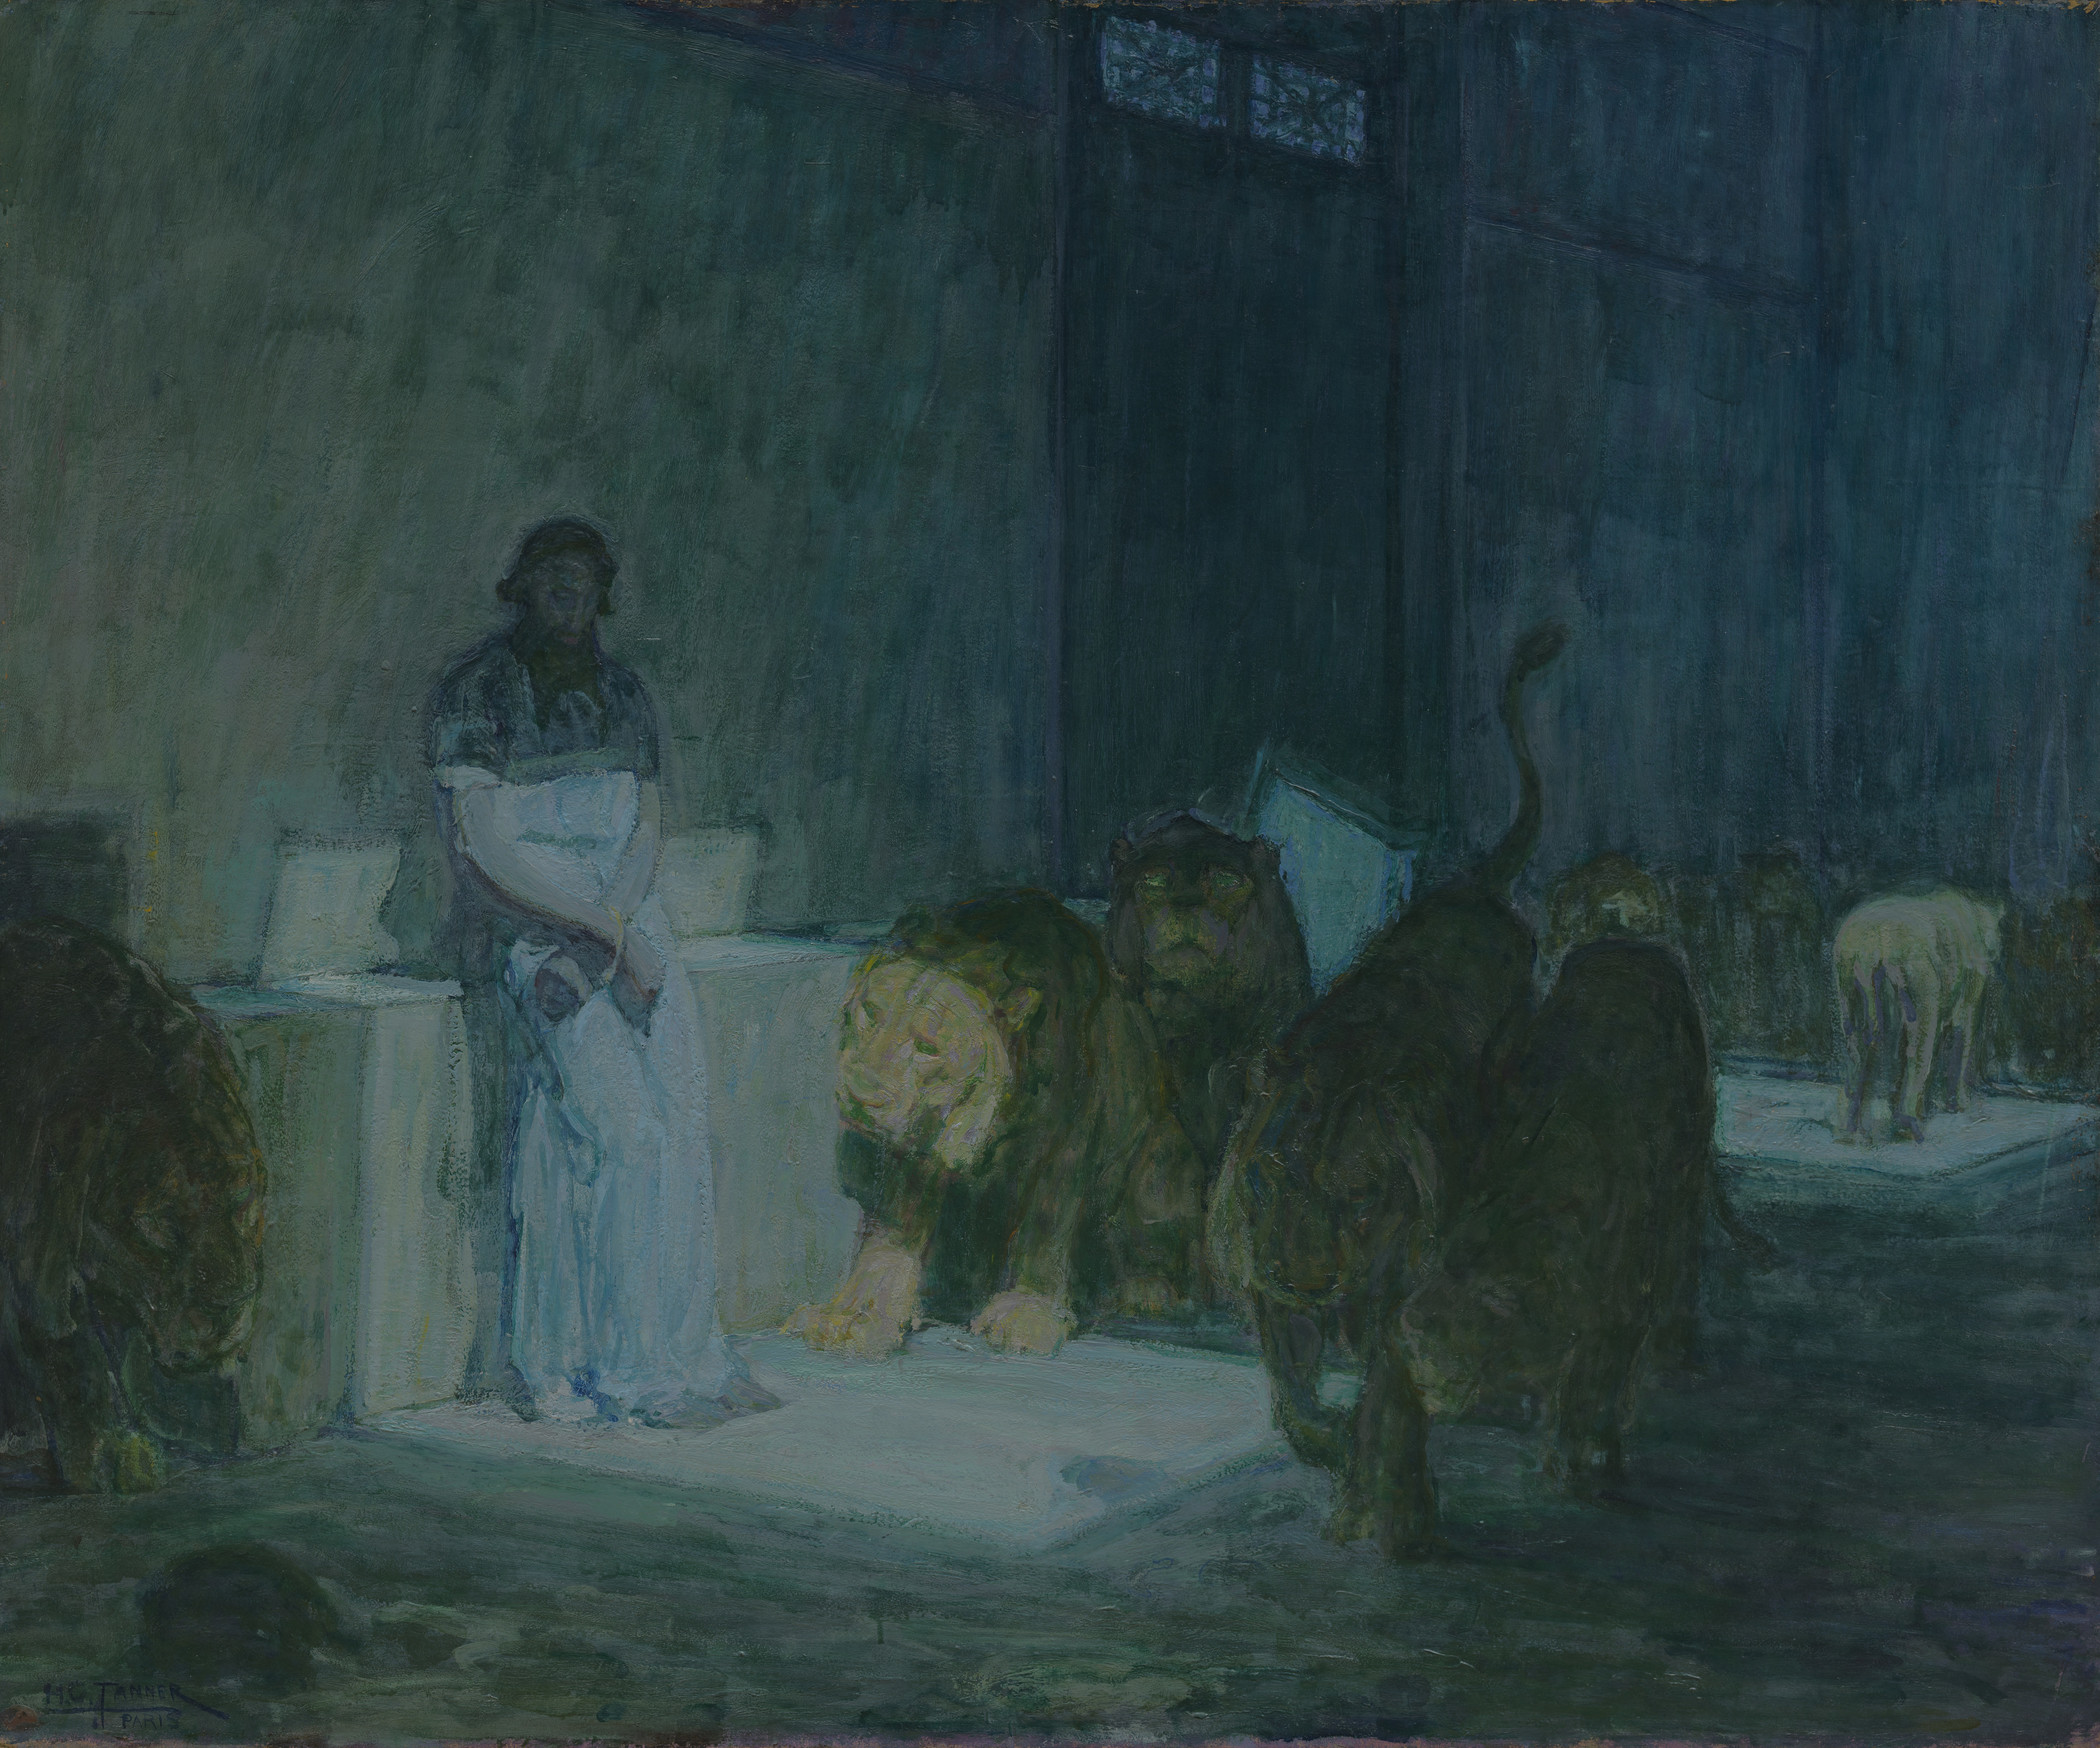 Daniel dans la fosse aux lions by Henry Ossawa Tanner - 1907-1918 - 104,46 x 126,8 cm LACMA, ou Musée d'art du comté de Los Angeles